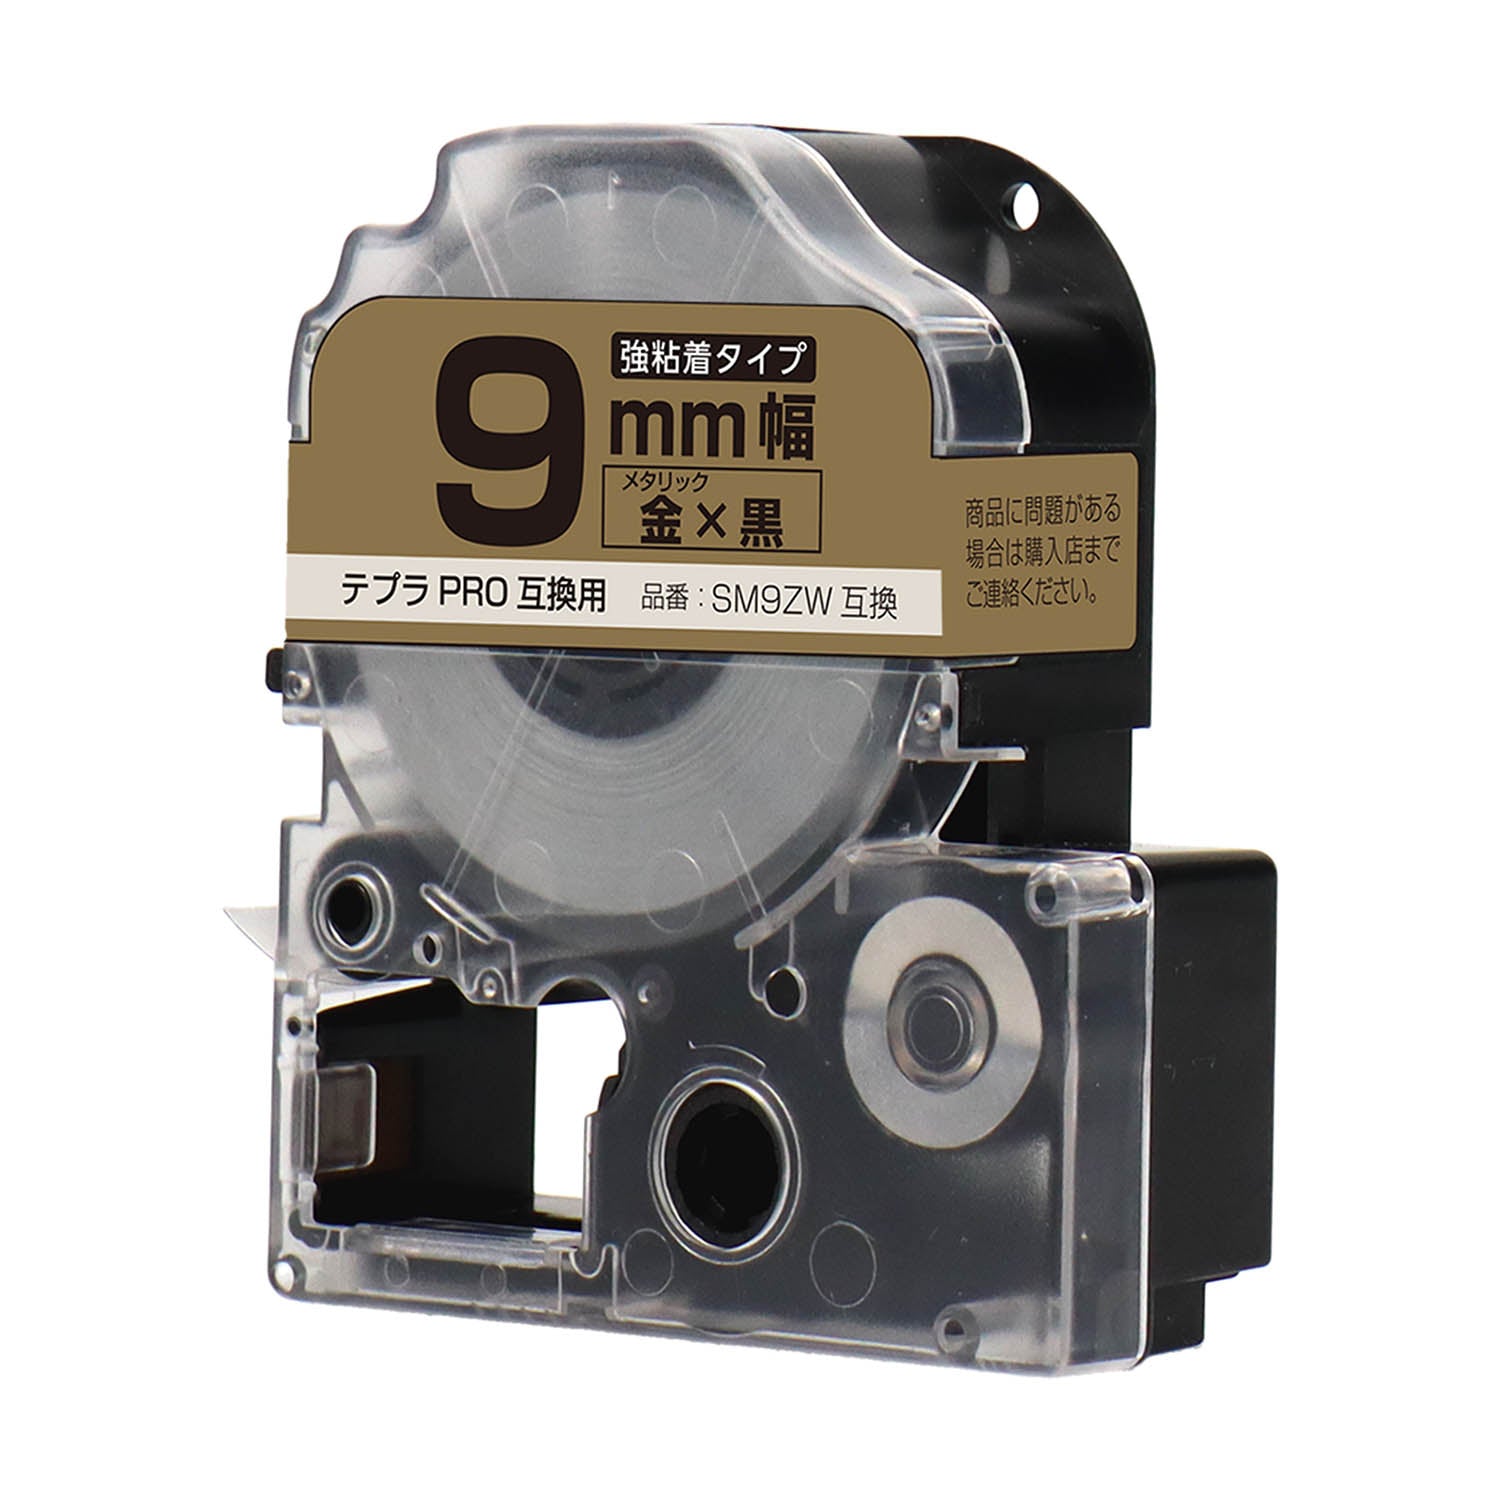 テプラPRO用互換テープカートリッジ メタリック金×黒文字 9mm